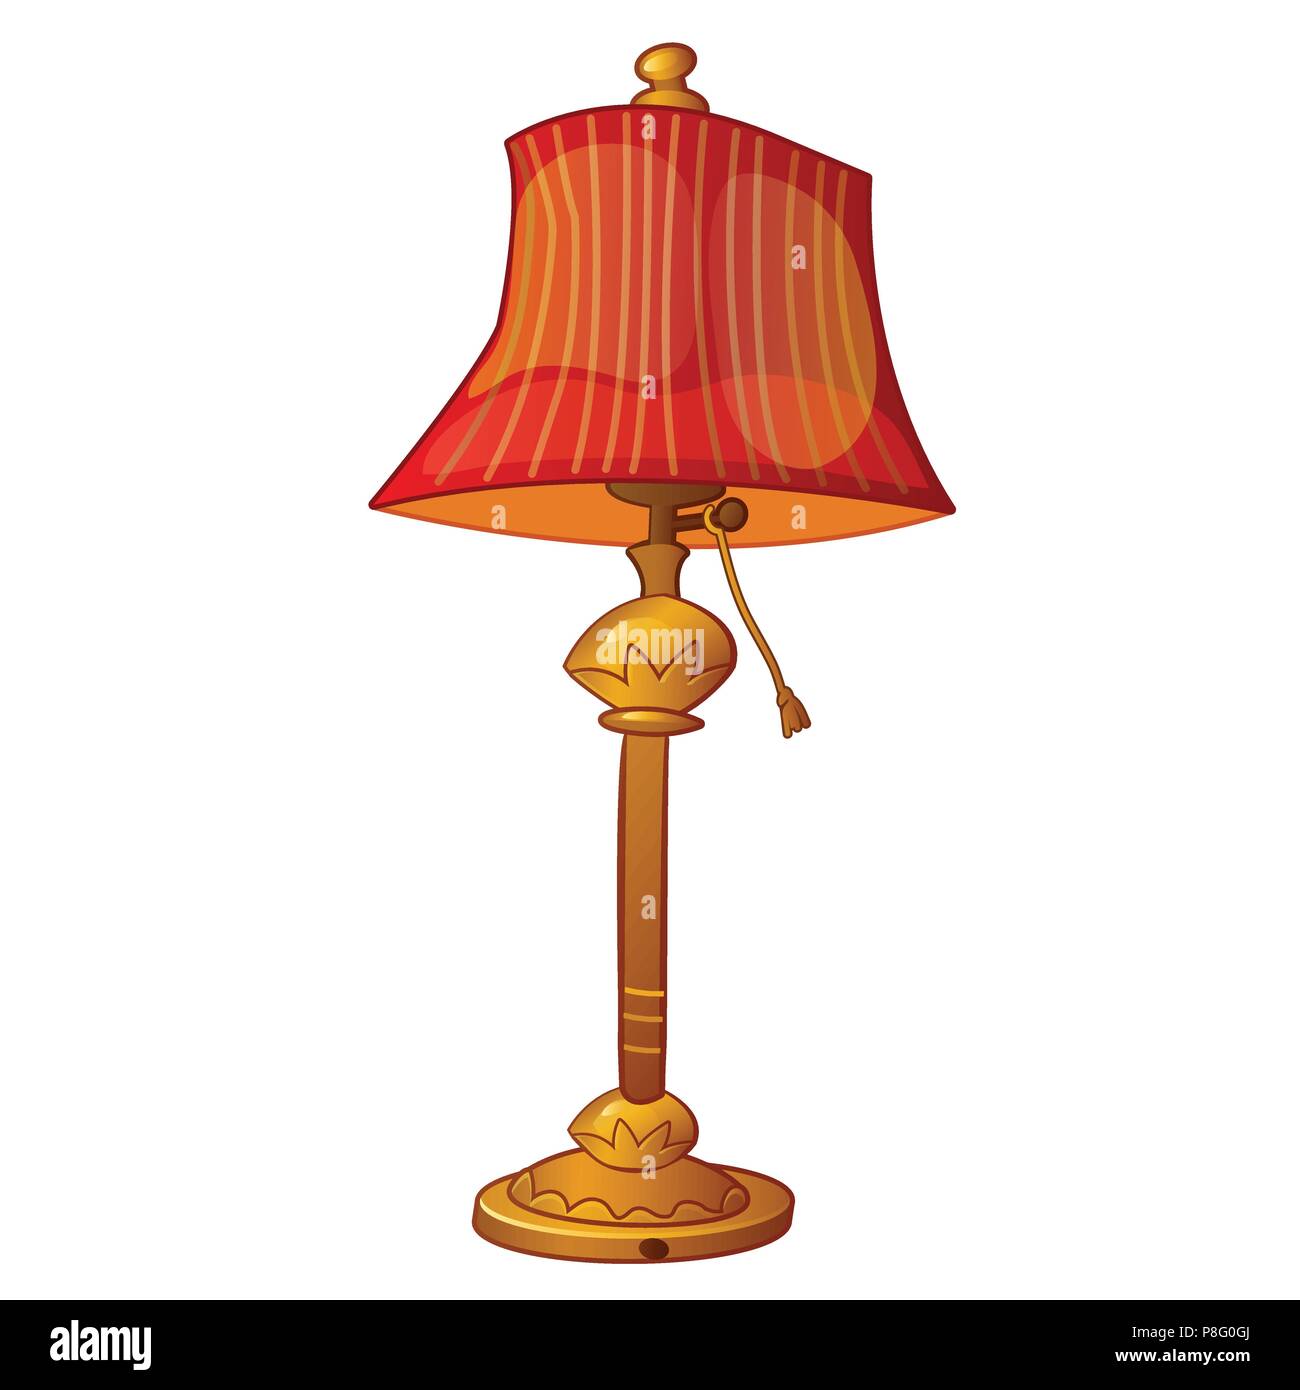 Cartoon lampe de plancher avec abat-jour en style vintage rouge isolé sur fond blanc. Close-up Vector illustration. Illustration de Vecteur